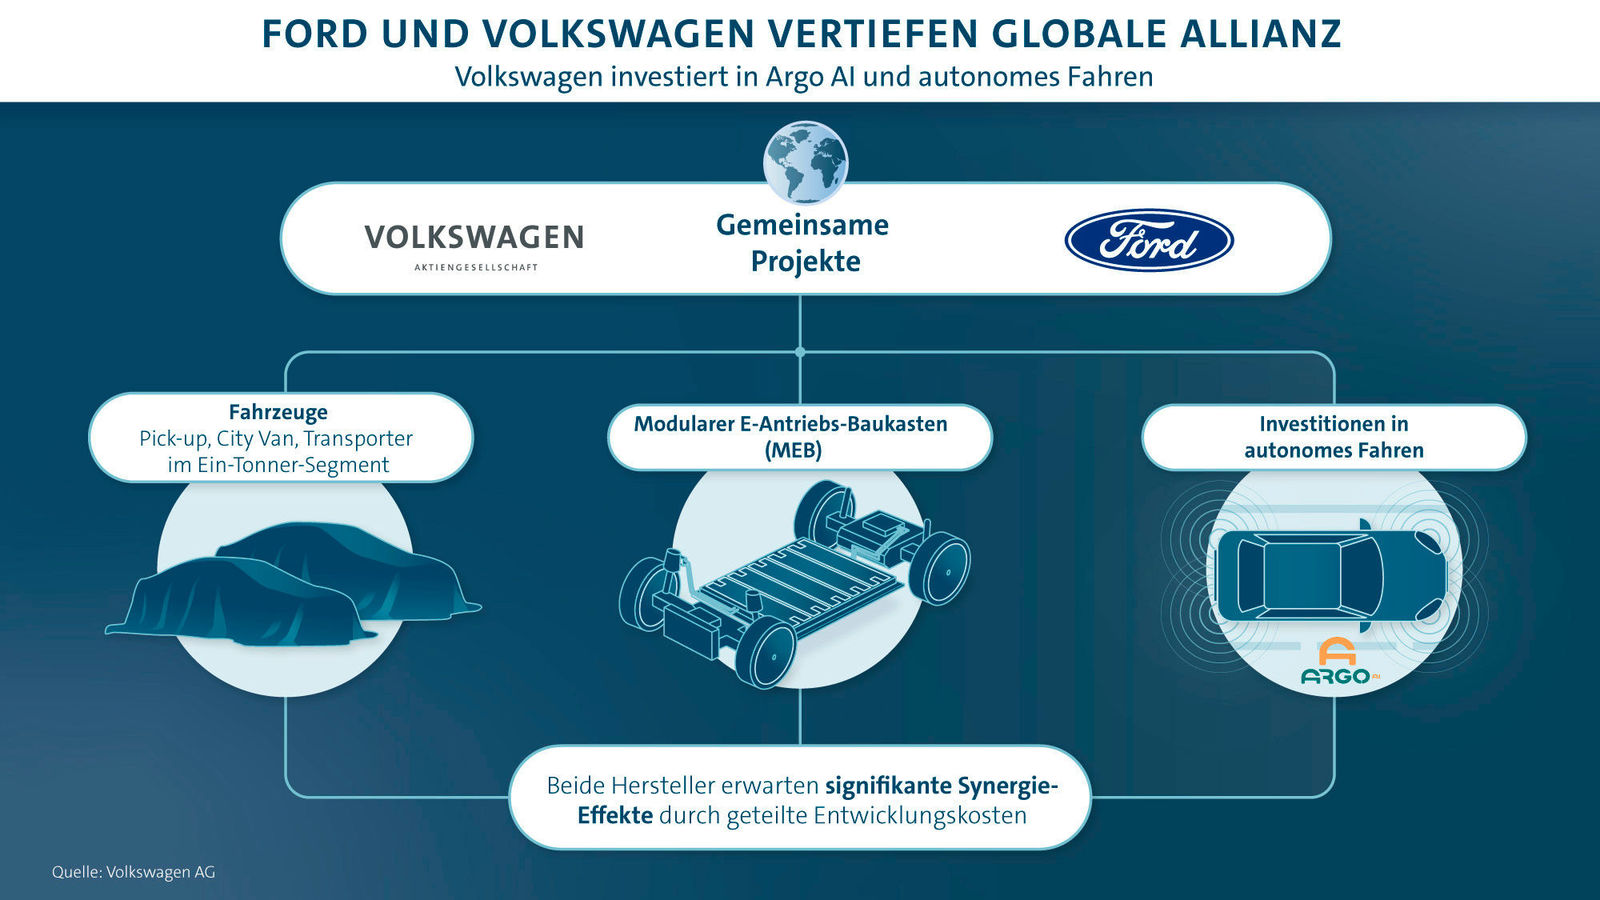 Volkswagen und Ford unterzeichnen Verträge für globale Allianz für leichte Nutzfahrzeuge, Elektrifizierung und autonomes Fahren